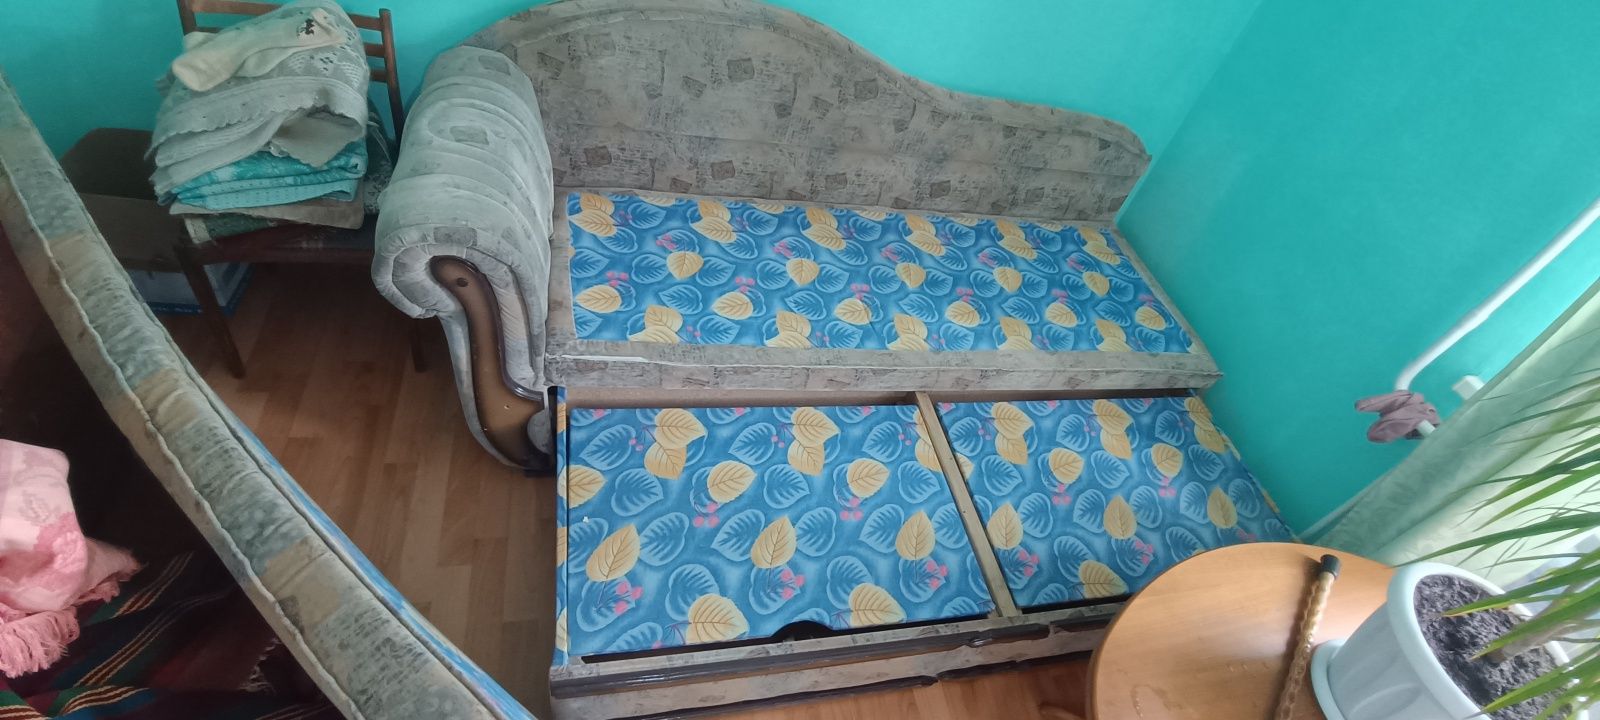 Продам диван длина 2 метра. Состояние на фото .